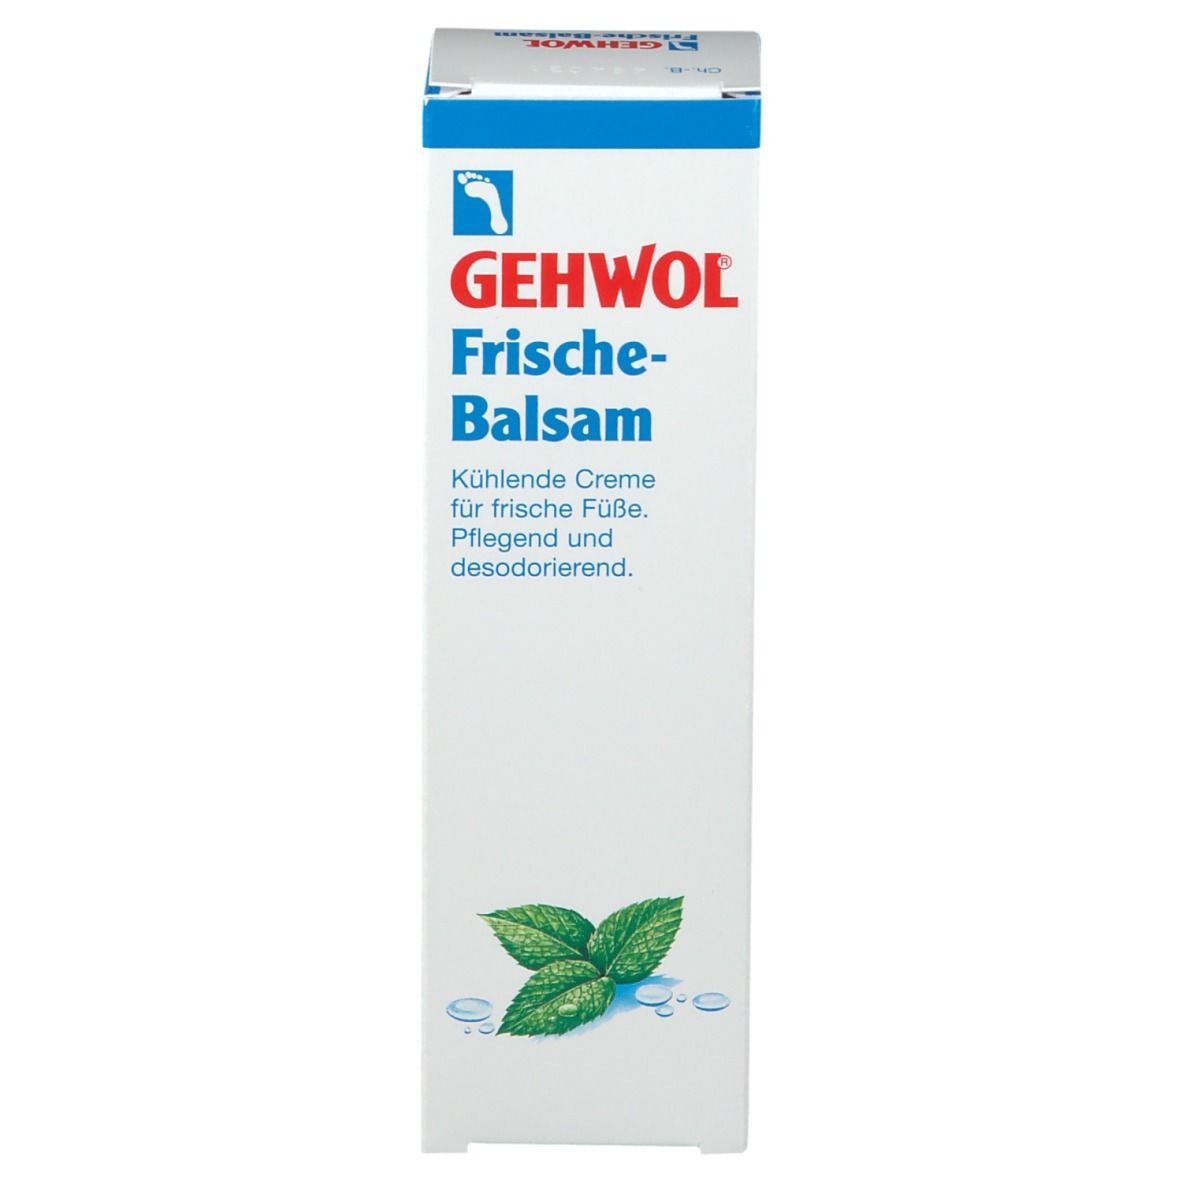 GEHWOL® Frische-Balsam